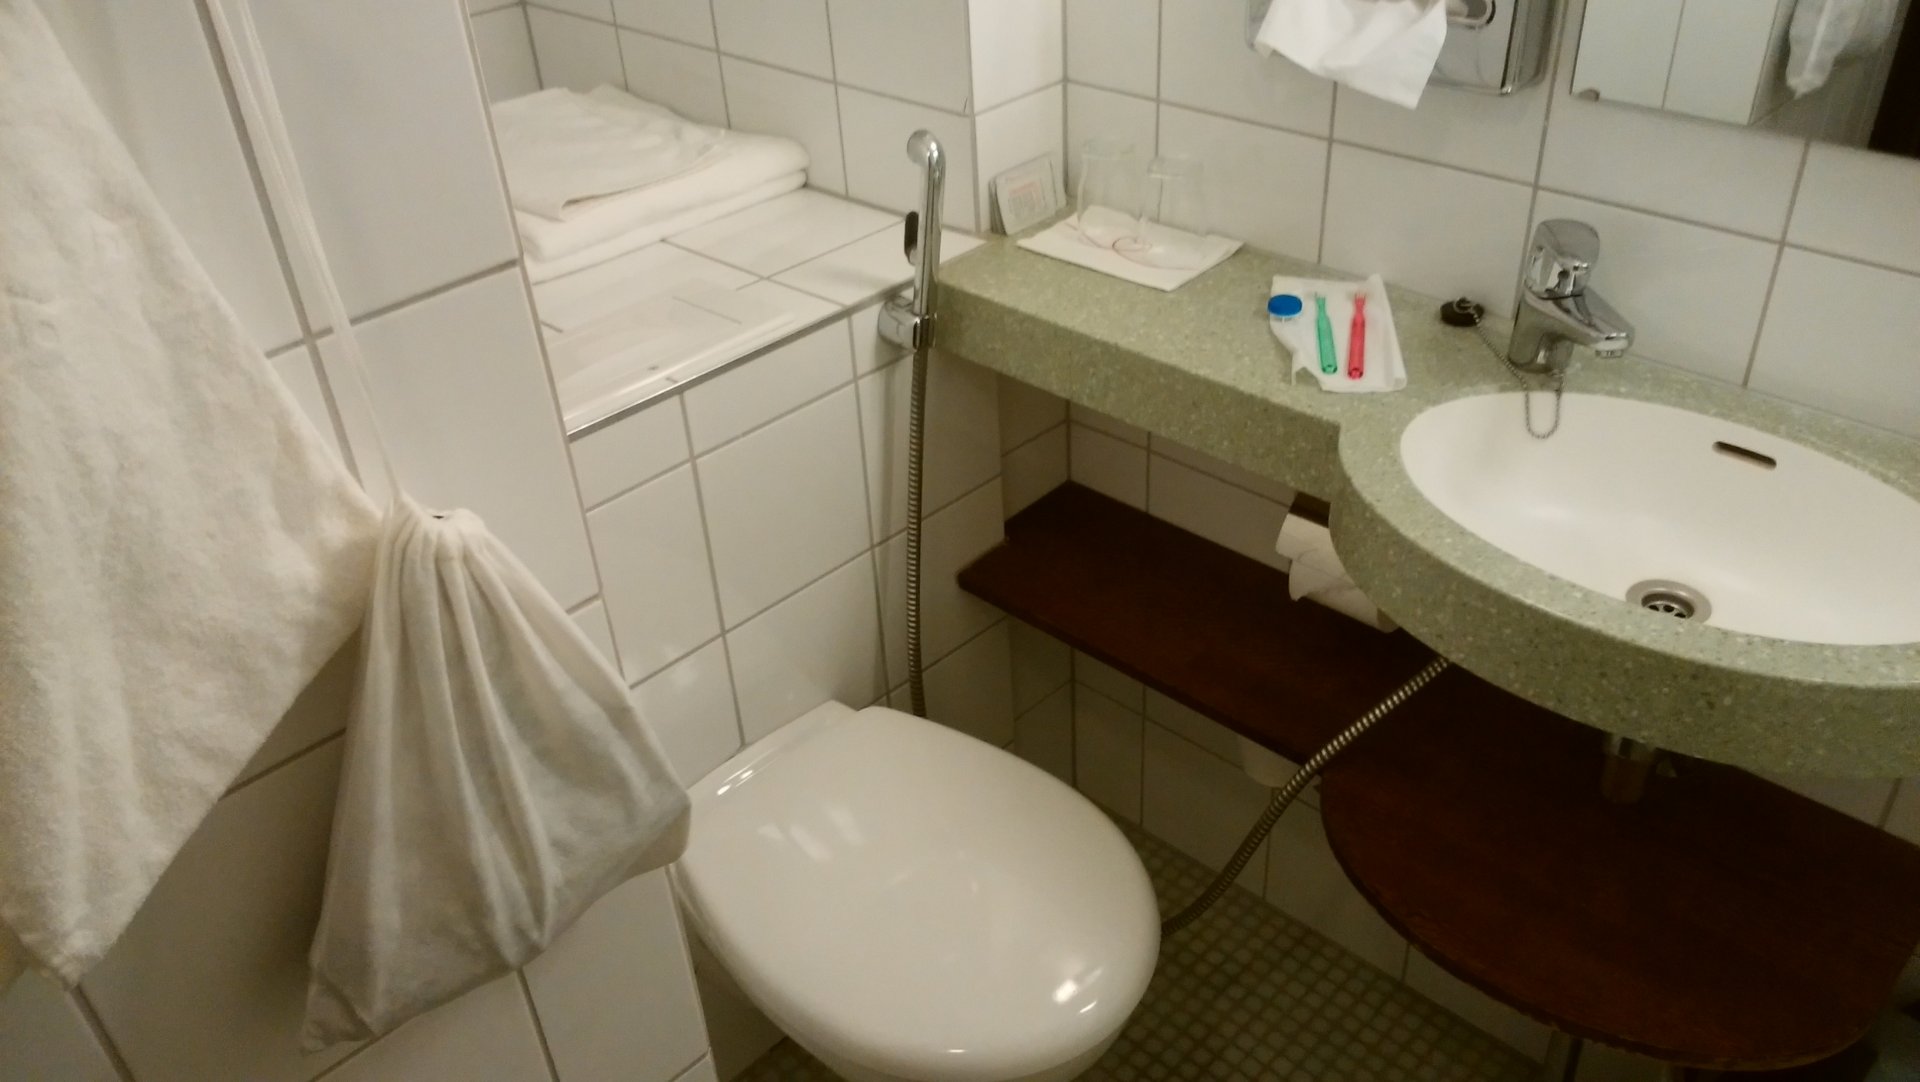 ソコスヴァークナのトイレ兼浴室